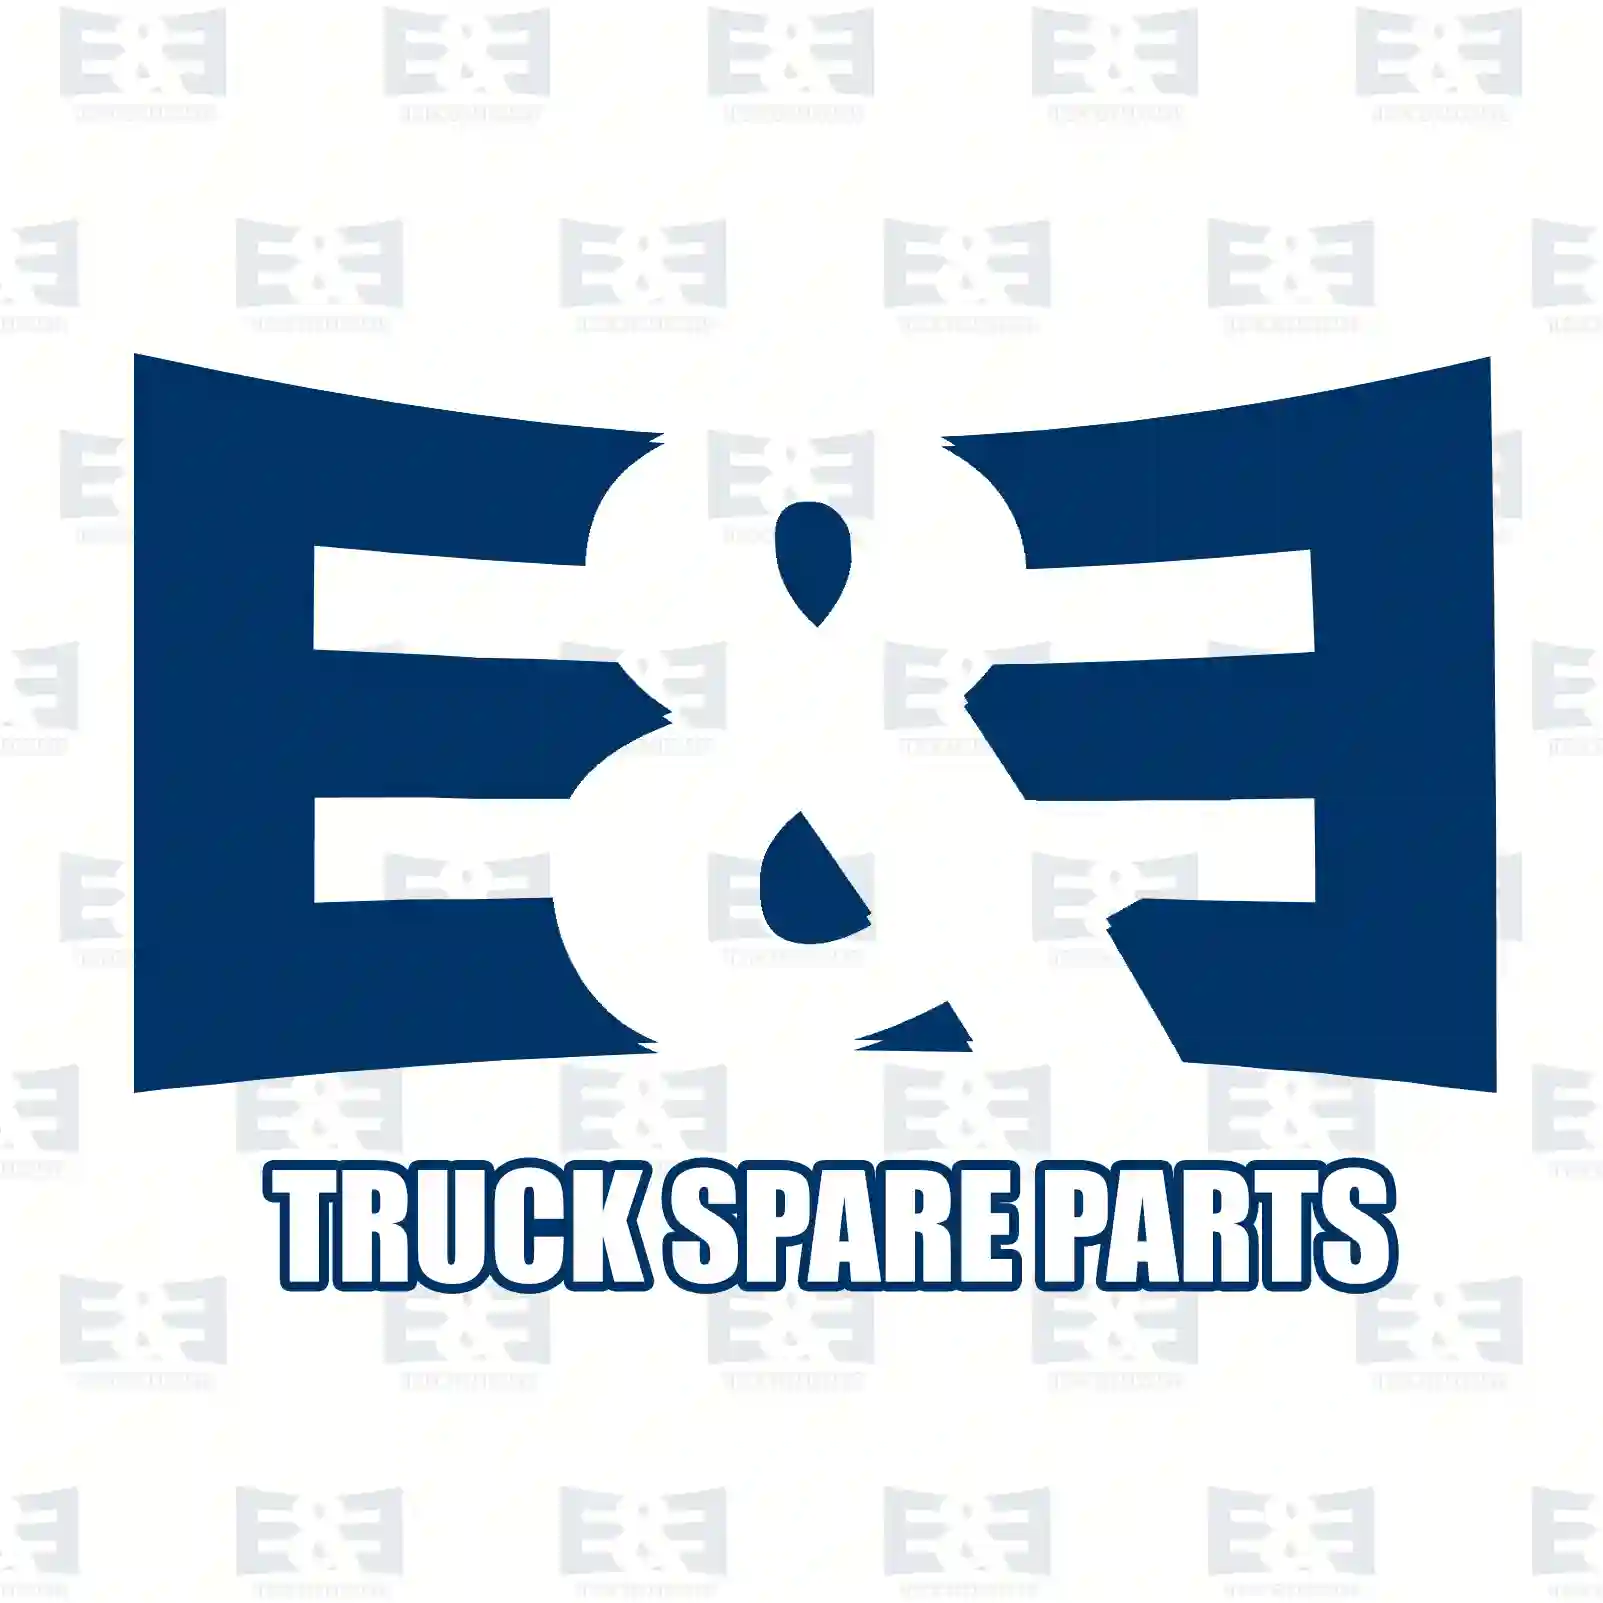 Joint cross, complete, 2E2276038, 1111745, 1111747, 1111748, 1422433, 1765828, 1879537, 294267, 294380, 304729, 337058, 337079, 345806, 345809, ZG30673-0008 ||  2E2276038 E&E Truck Spare Parts | Truck Spare Parts, Auotomotive Spare Parts Joint cross, complete, 2E2276038, 1111745, 1111747, 1111748, 1422433, 1765828, 1879537, 294267, 294380, 304729, 337058, 337079, 345806, 345809, ZG30673-0008 ||  2E2276038 E&E Truck Spare Parts | Truck Spare Parts, Auotomotive Spare Parts